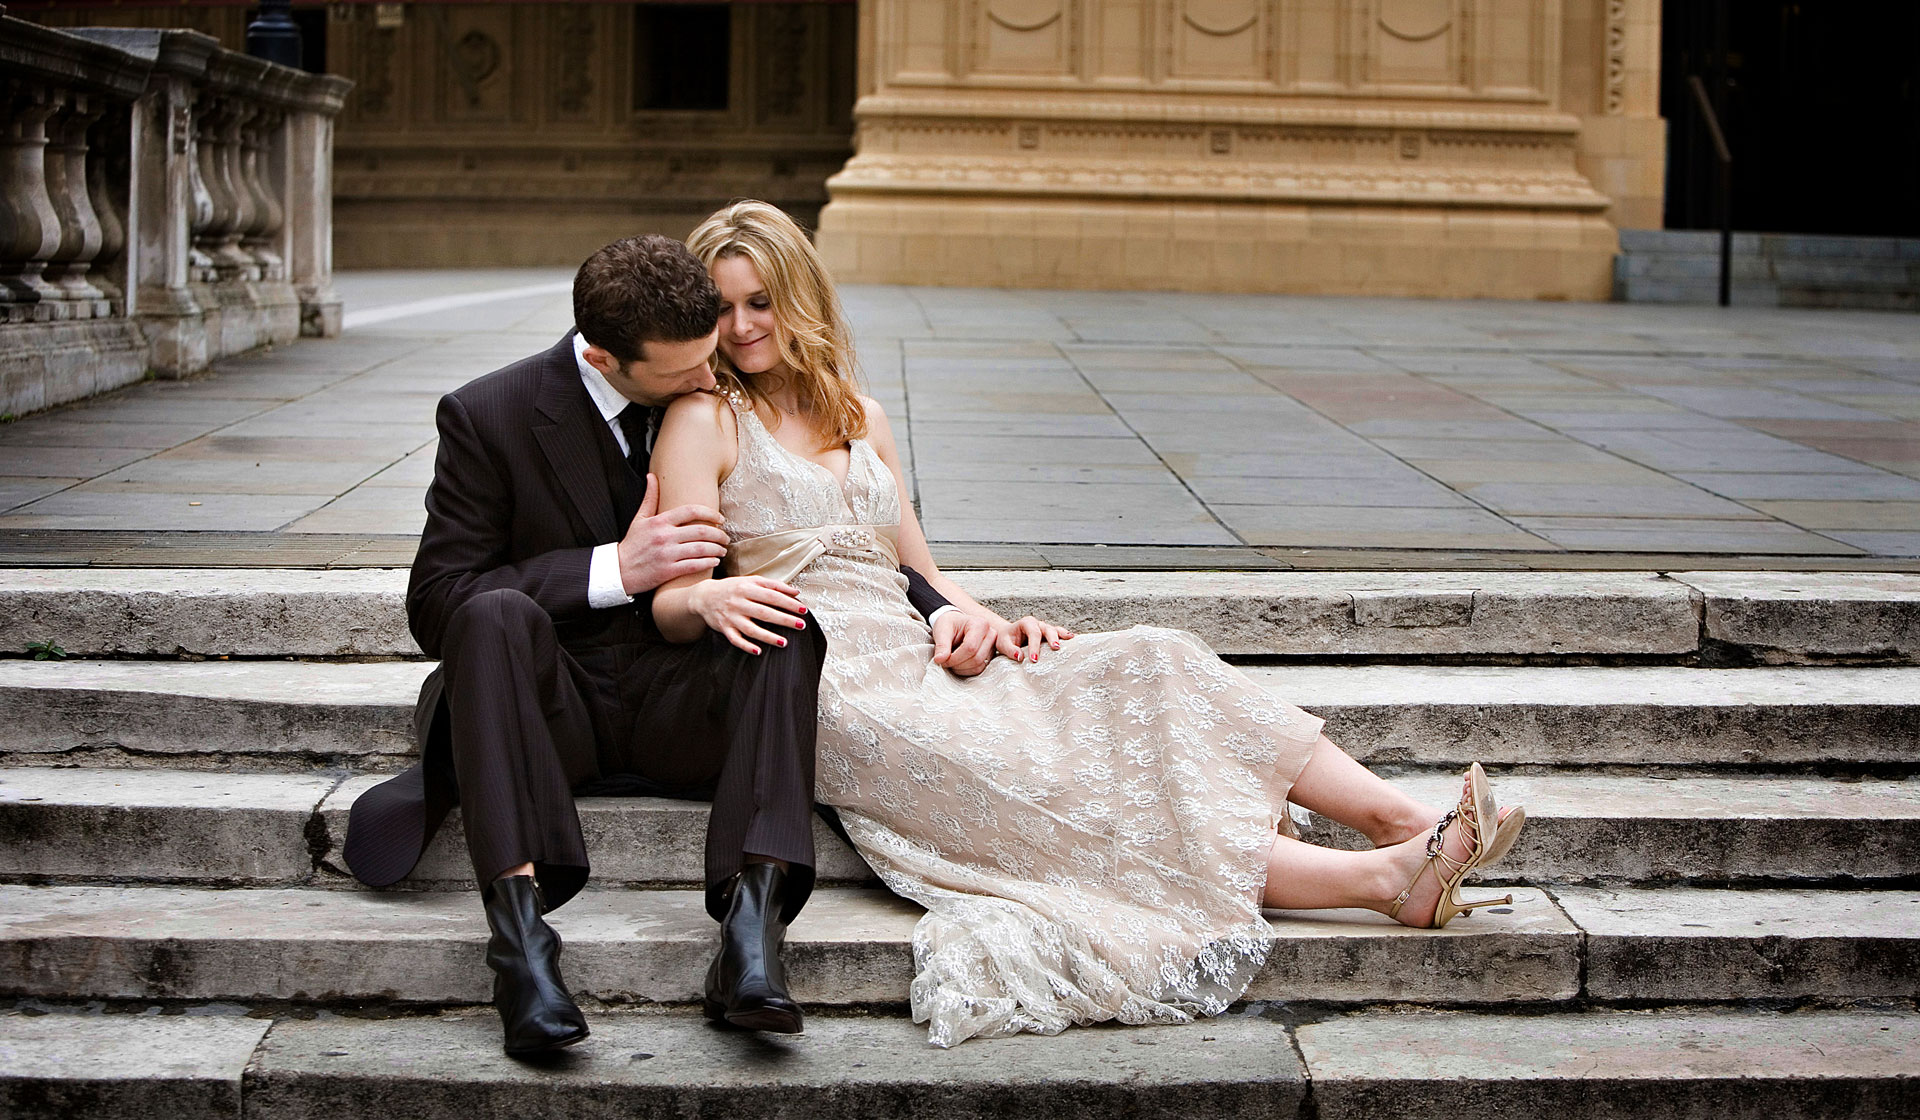 Wedding Portraits on the Royal Albert Hall steps.